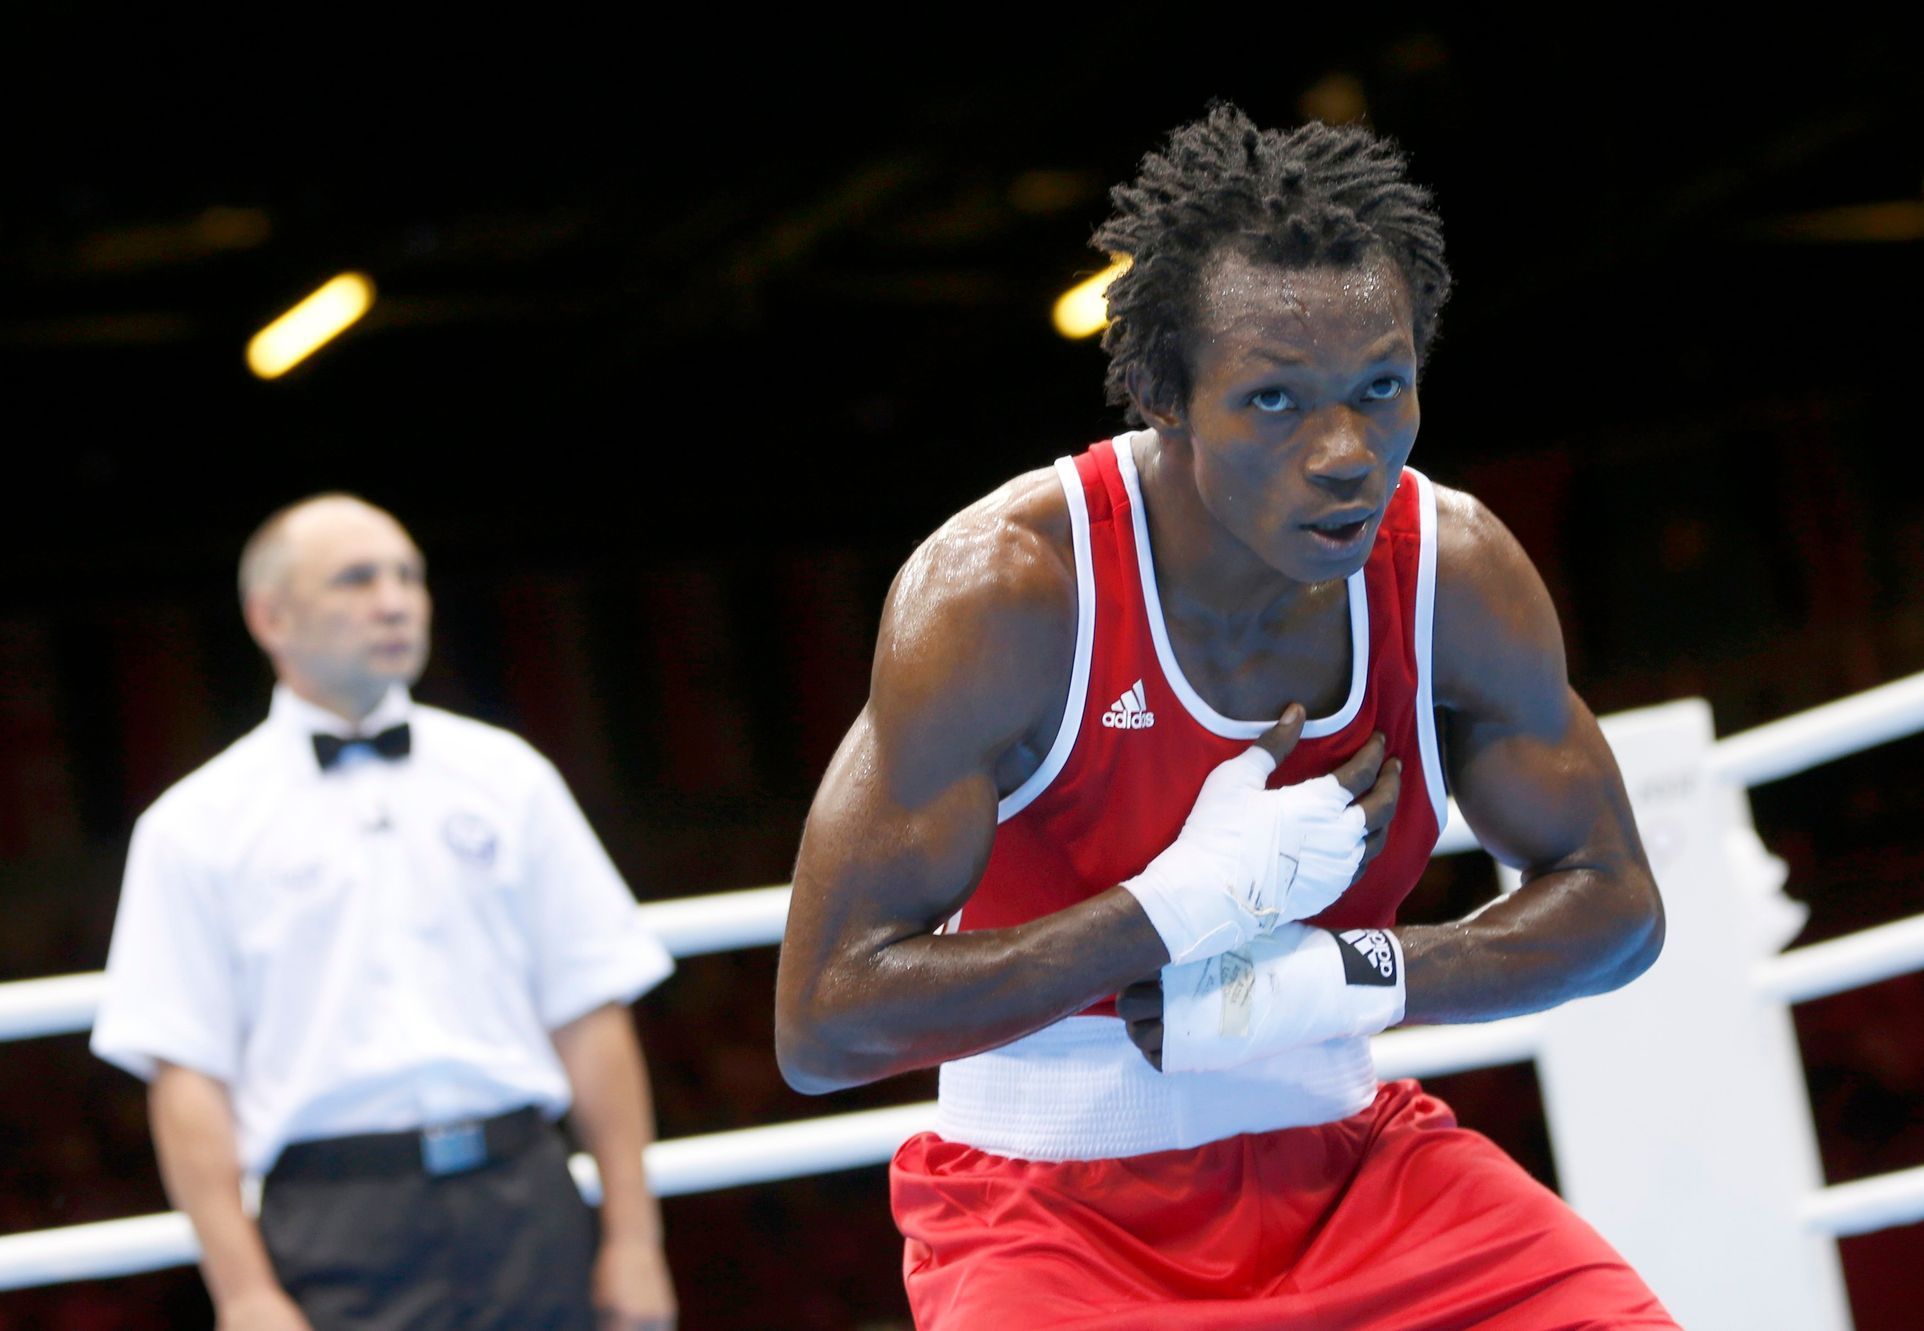 Kamerunský boxer Thomas Essomba na olympiádě v Londýně 2012